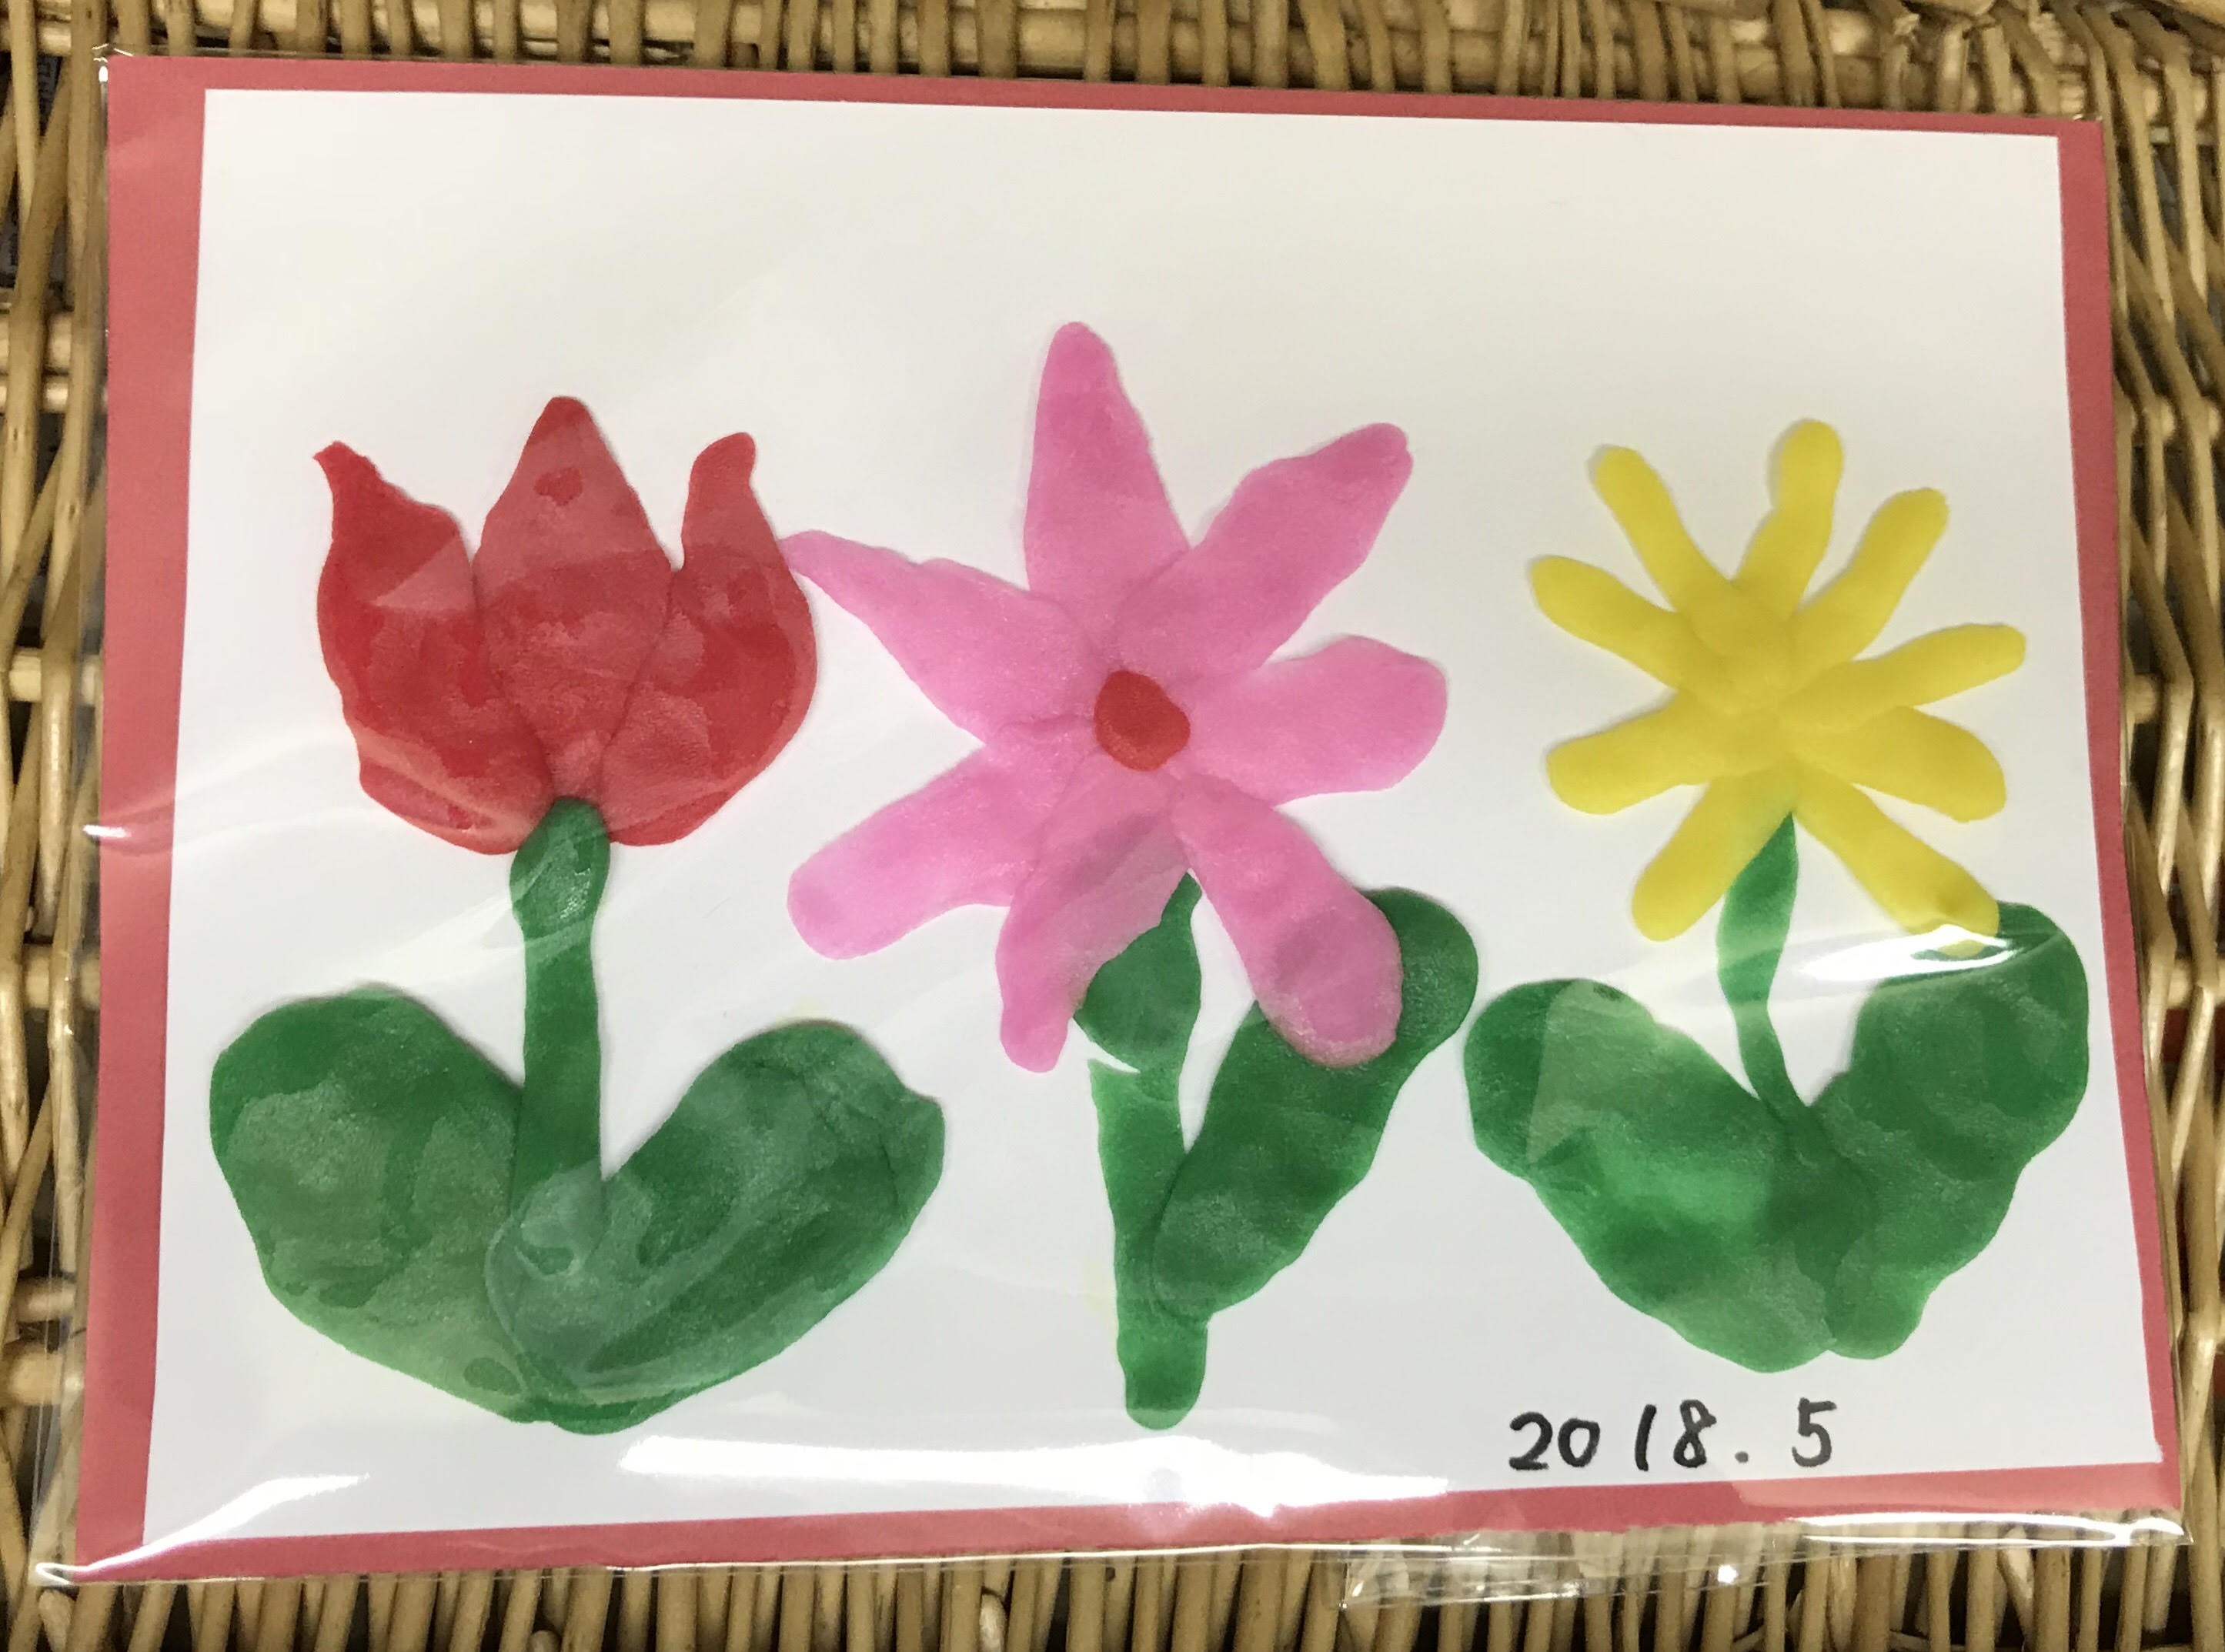 【イベント報告】5/19(土)かんてんネンドでお花畑を作ろう